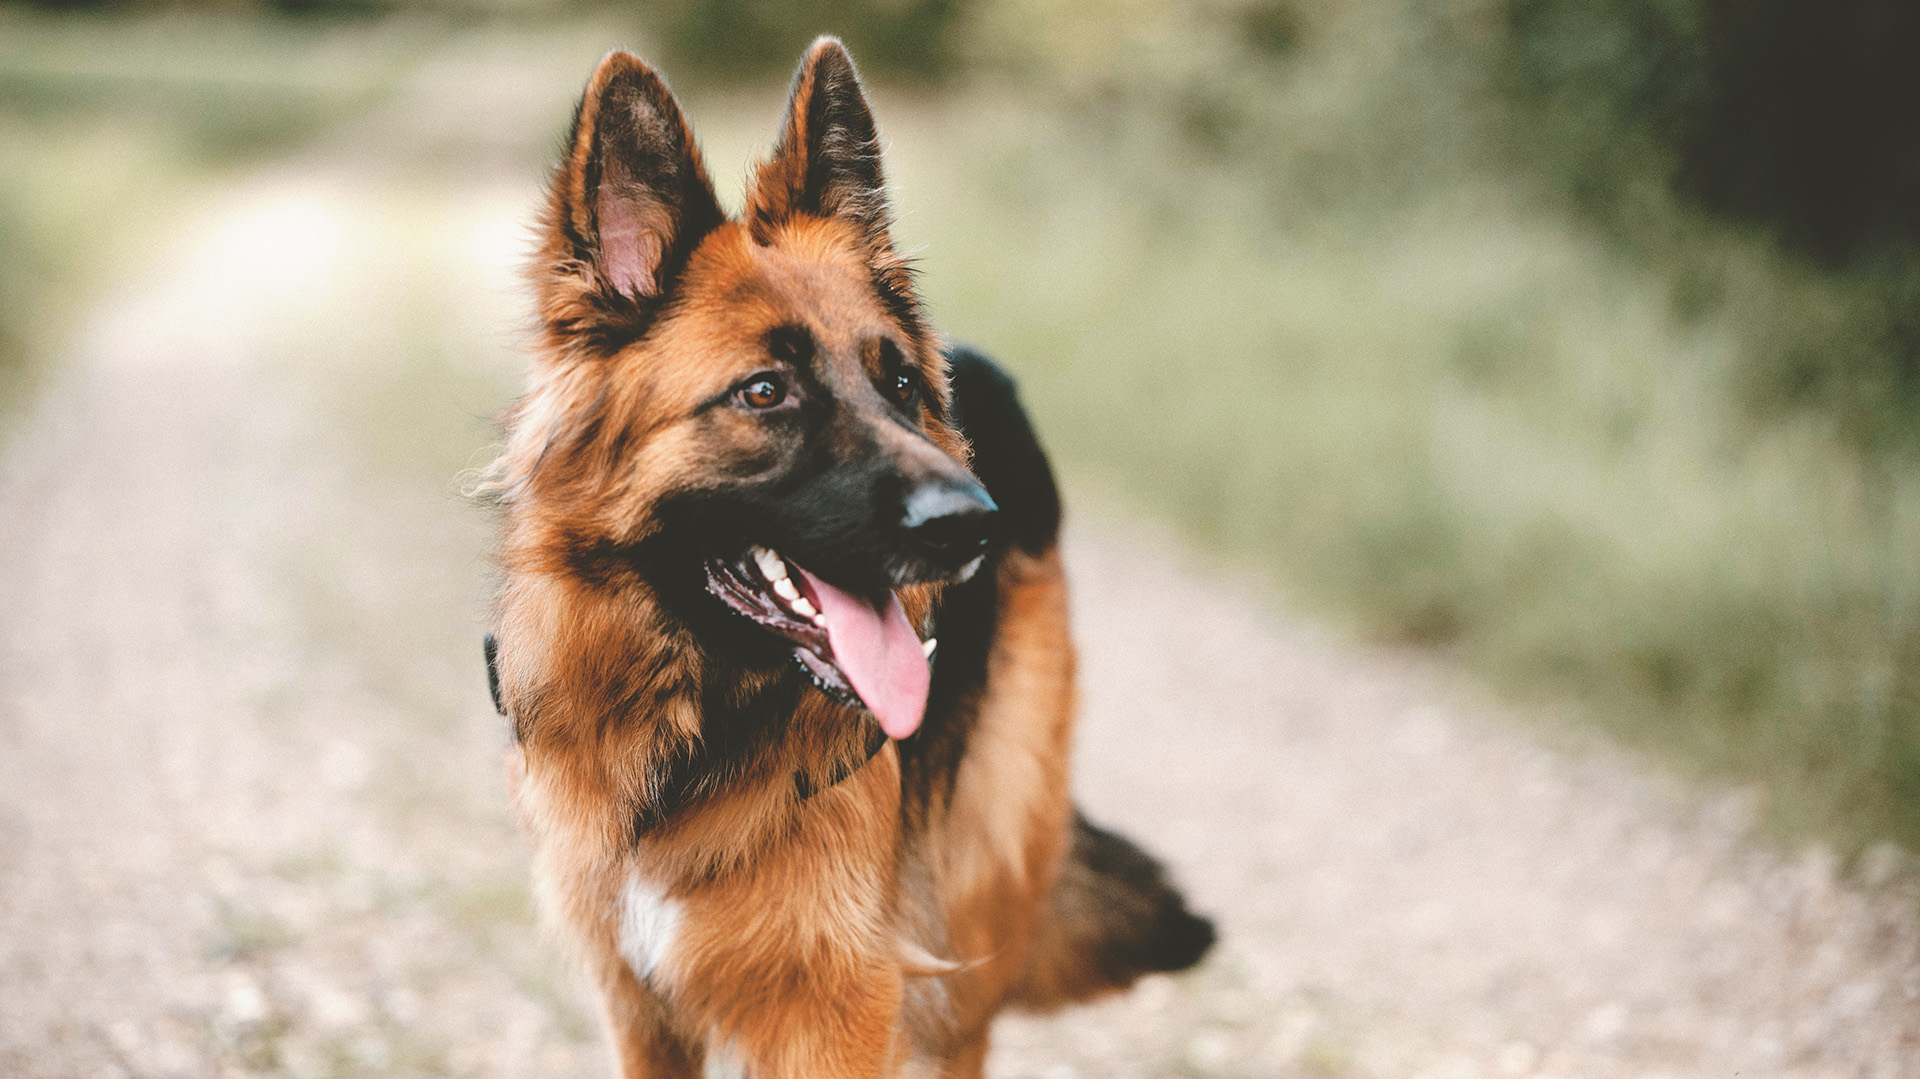 Son una de las razas caninas más brillantes que no solo han servido a la fuerza, sino que también han ayudado como compañeros de asistencia médica e incluso como perros de terapia (Shutterstock.com)